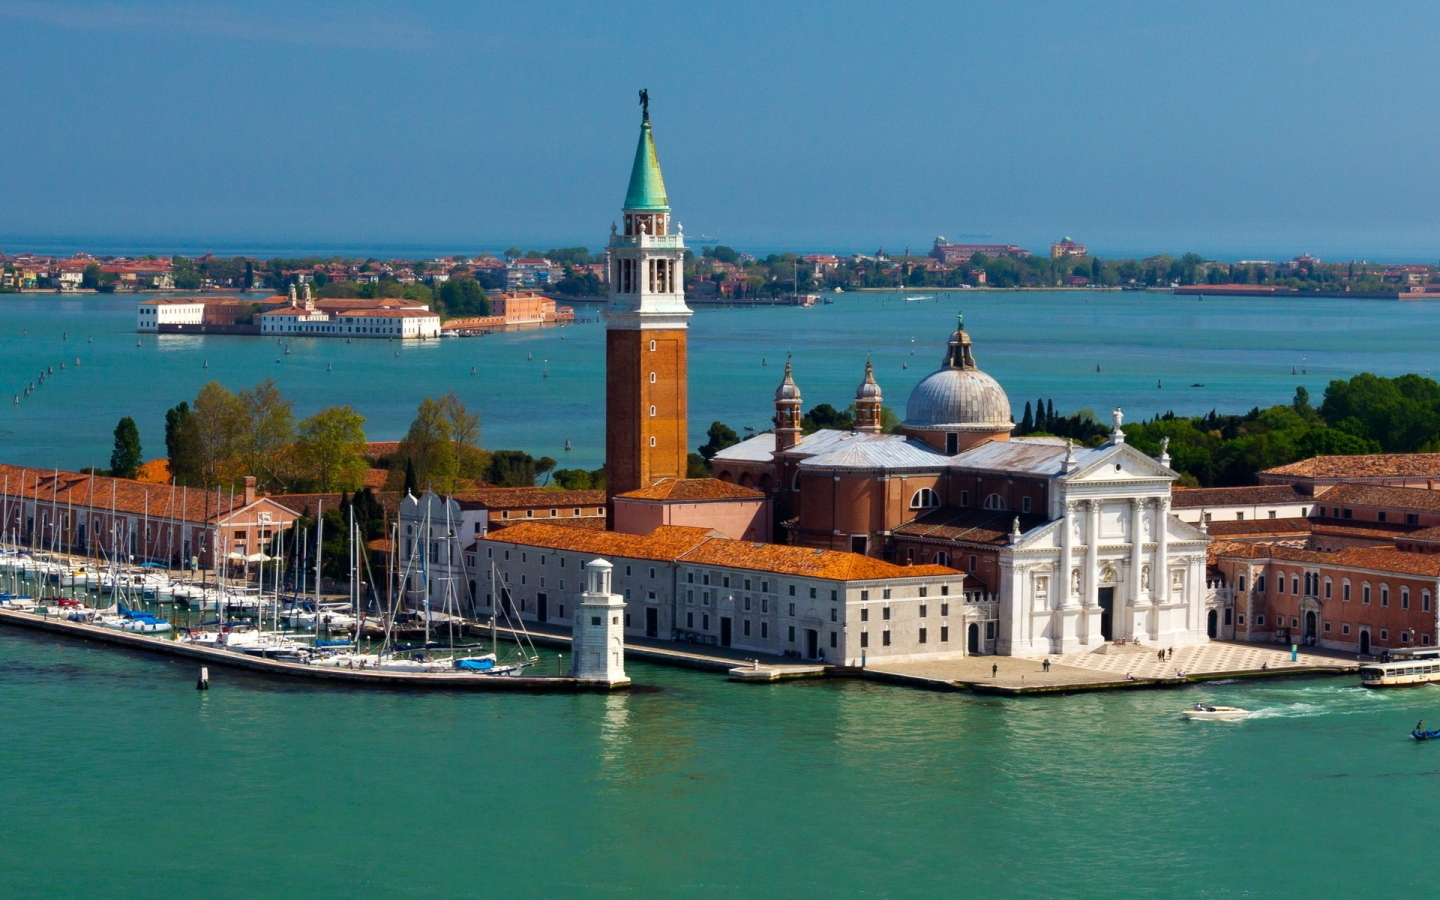 Island San Giorgio Maggiore Venice for 1440 x 900 widescreen resolution